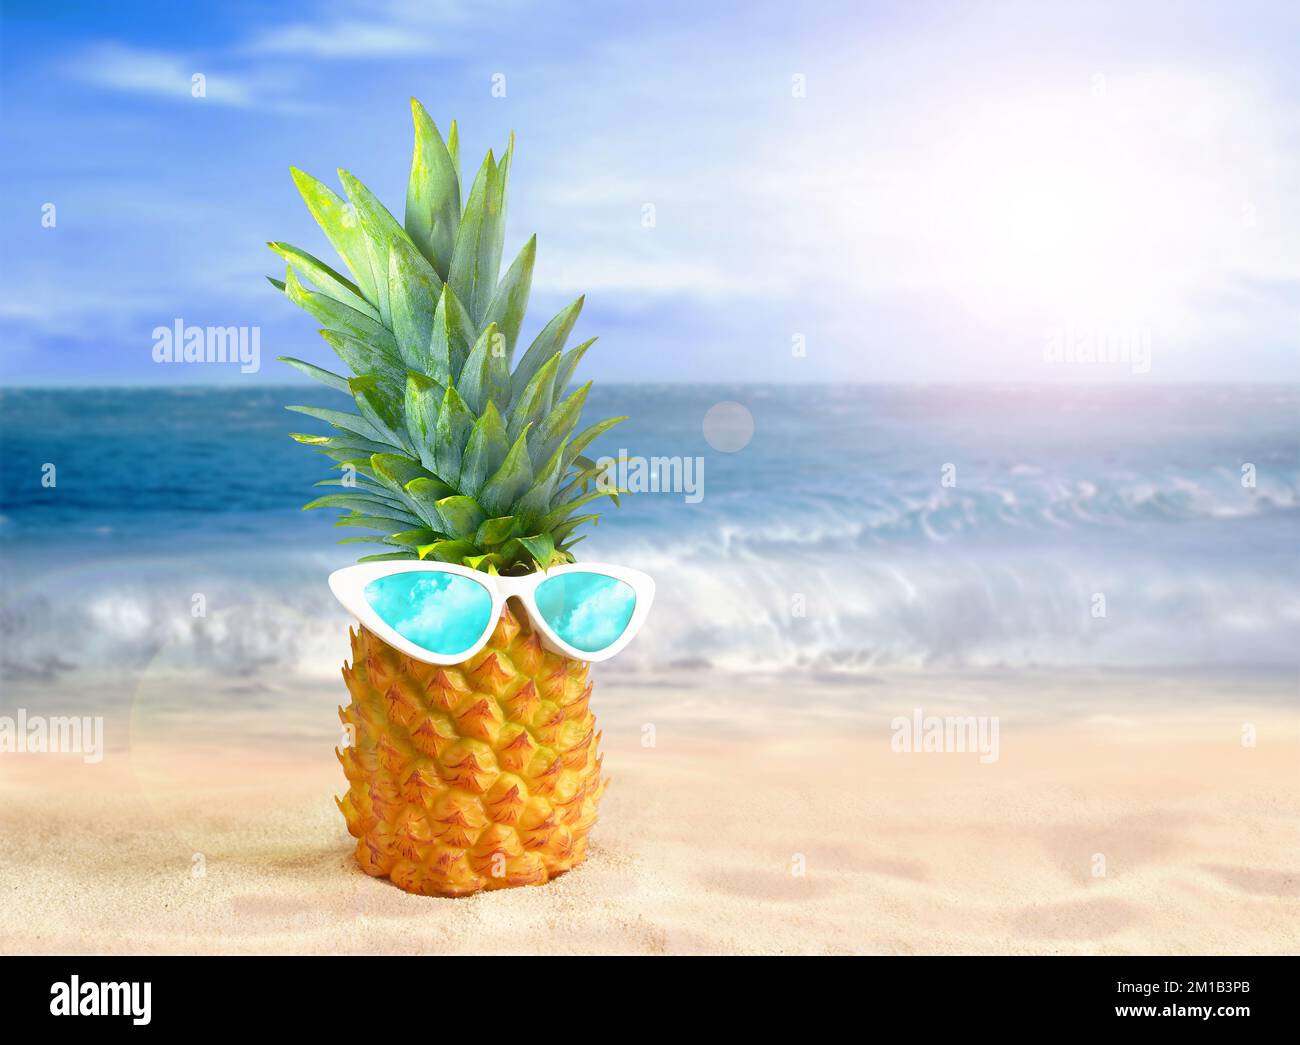 Ananas avec lunettes de soleil sur fond de plage tropicale. Concept d'été. Banque D'Images